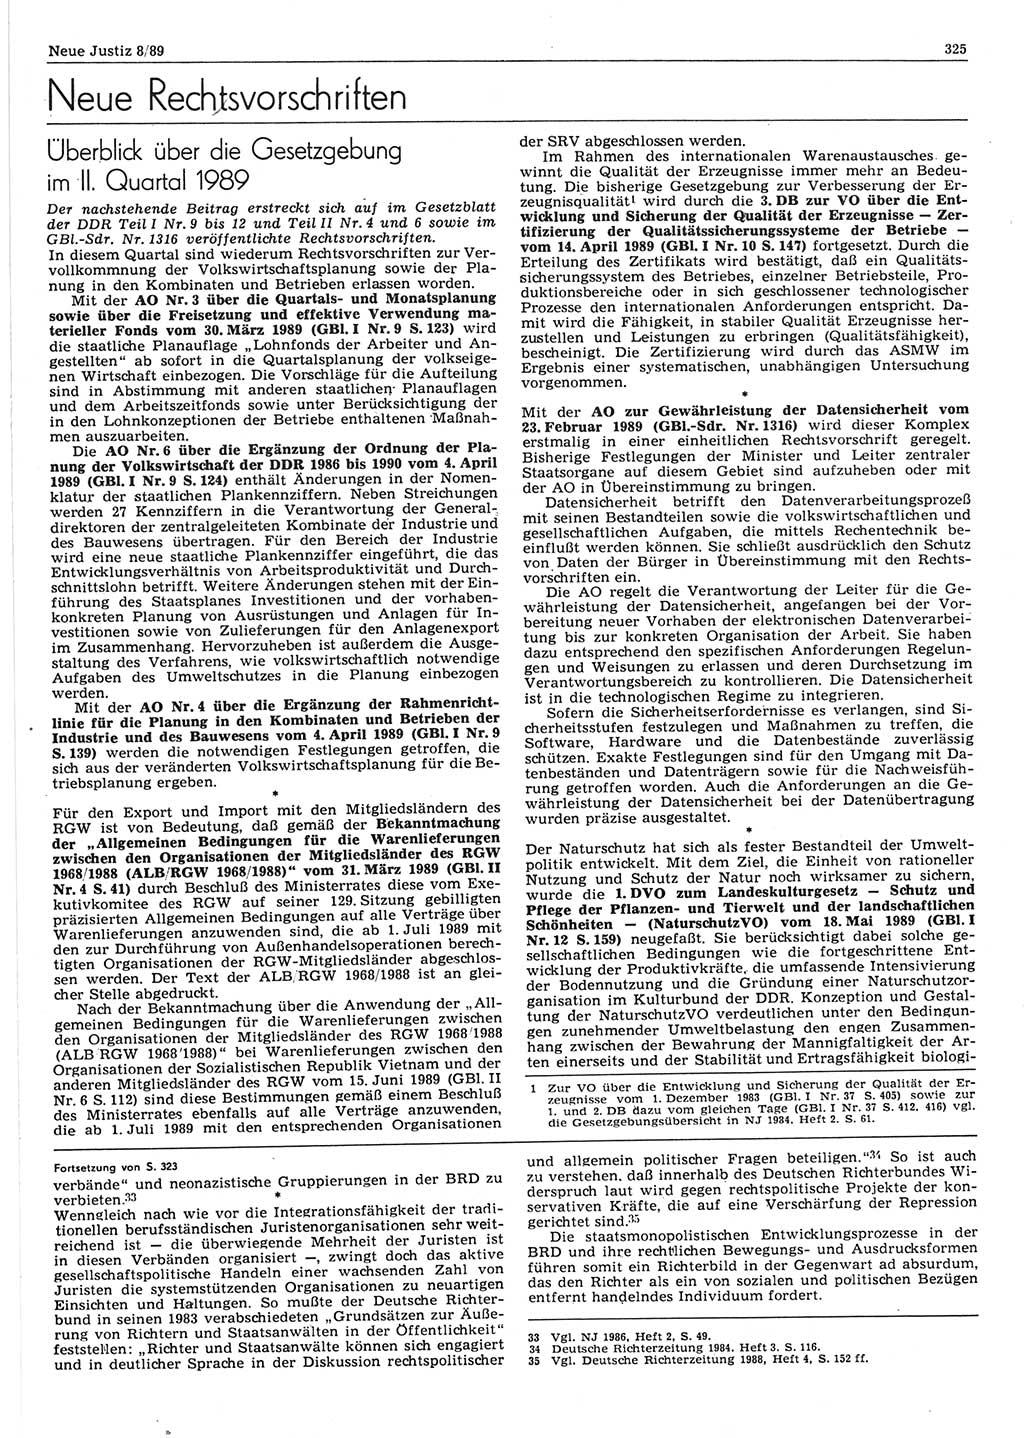 Neue Justiz (NJ), Zeitschrift für sozialistisches Recht und Gesetzlichkeit [Deutsche Demokratische Republik (DDR)], 43. Jahrgang 1989, Seite 325 (NJ DDR 1989, S. 325)